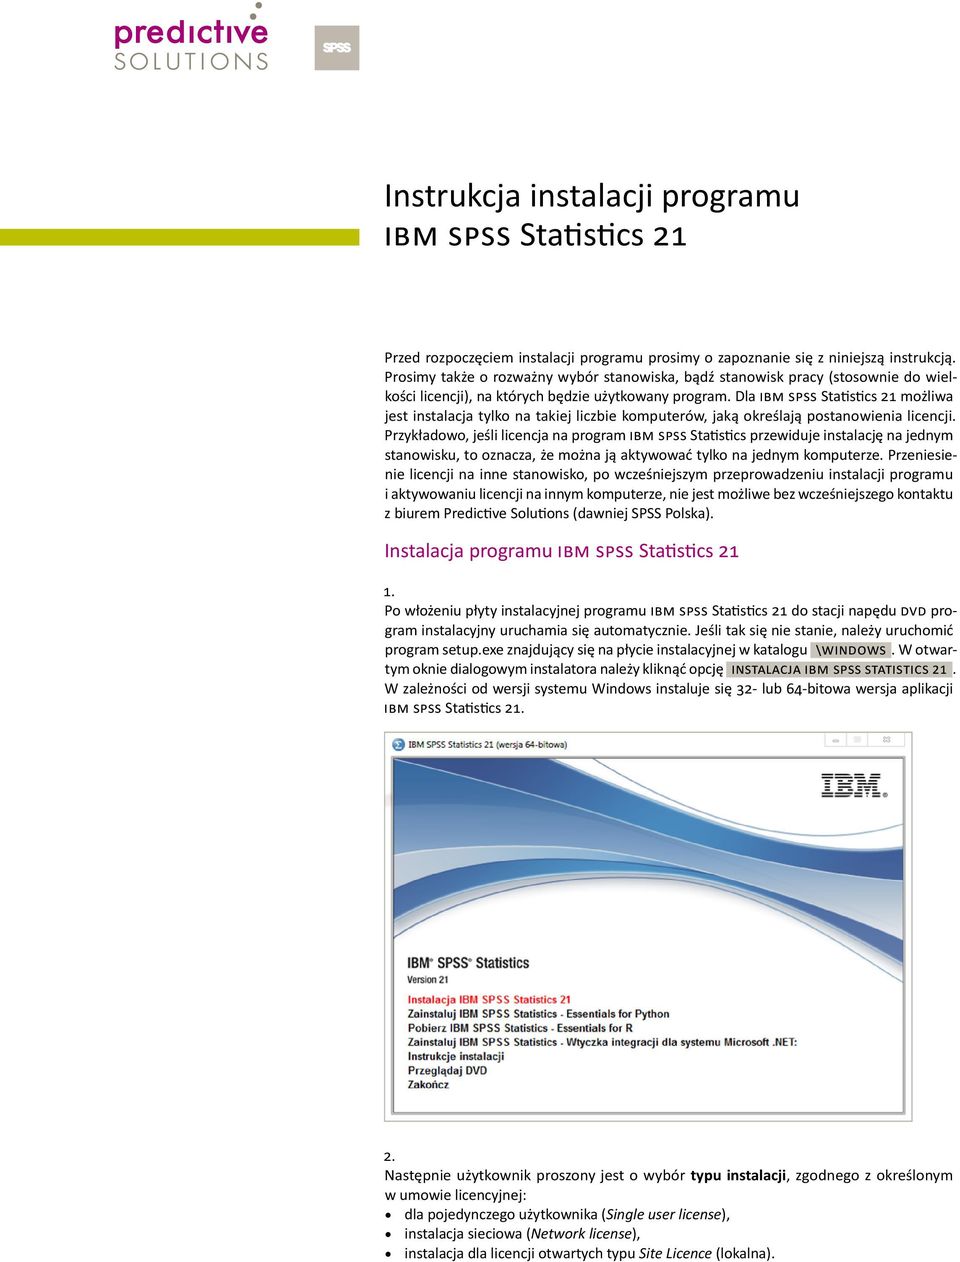 Dla IBM SPSS Statistics 21 możliwa jest instalacja tylko na takiej liczbie komputerów, jaką określają postanowienia licencji.